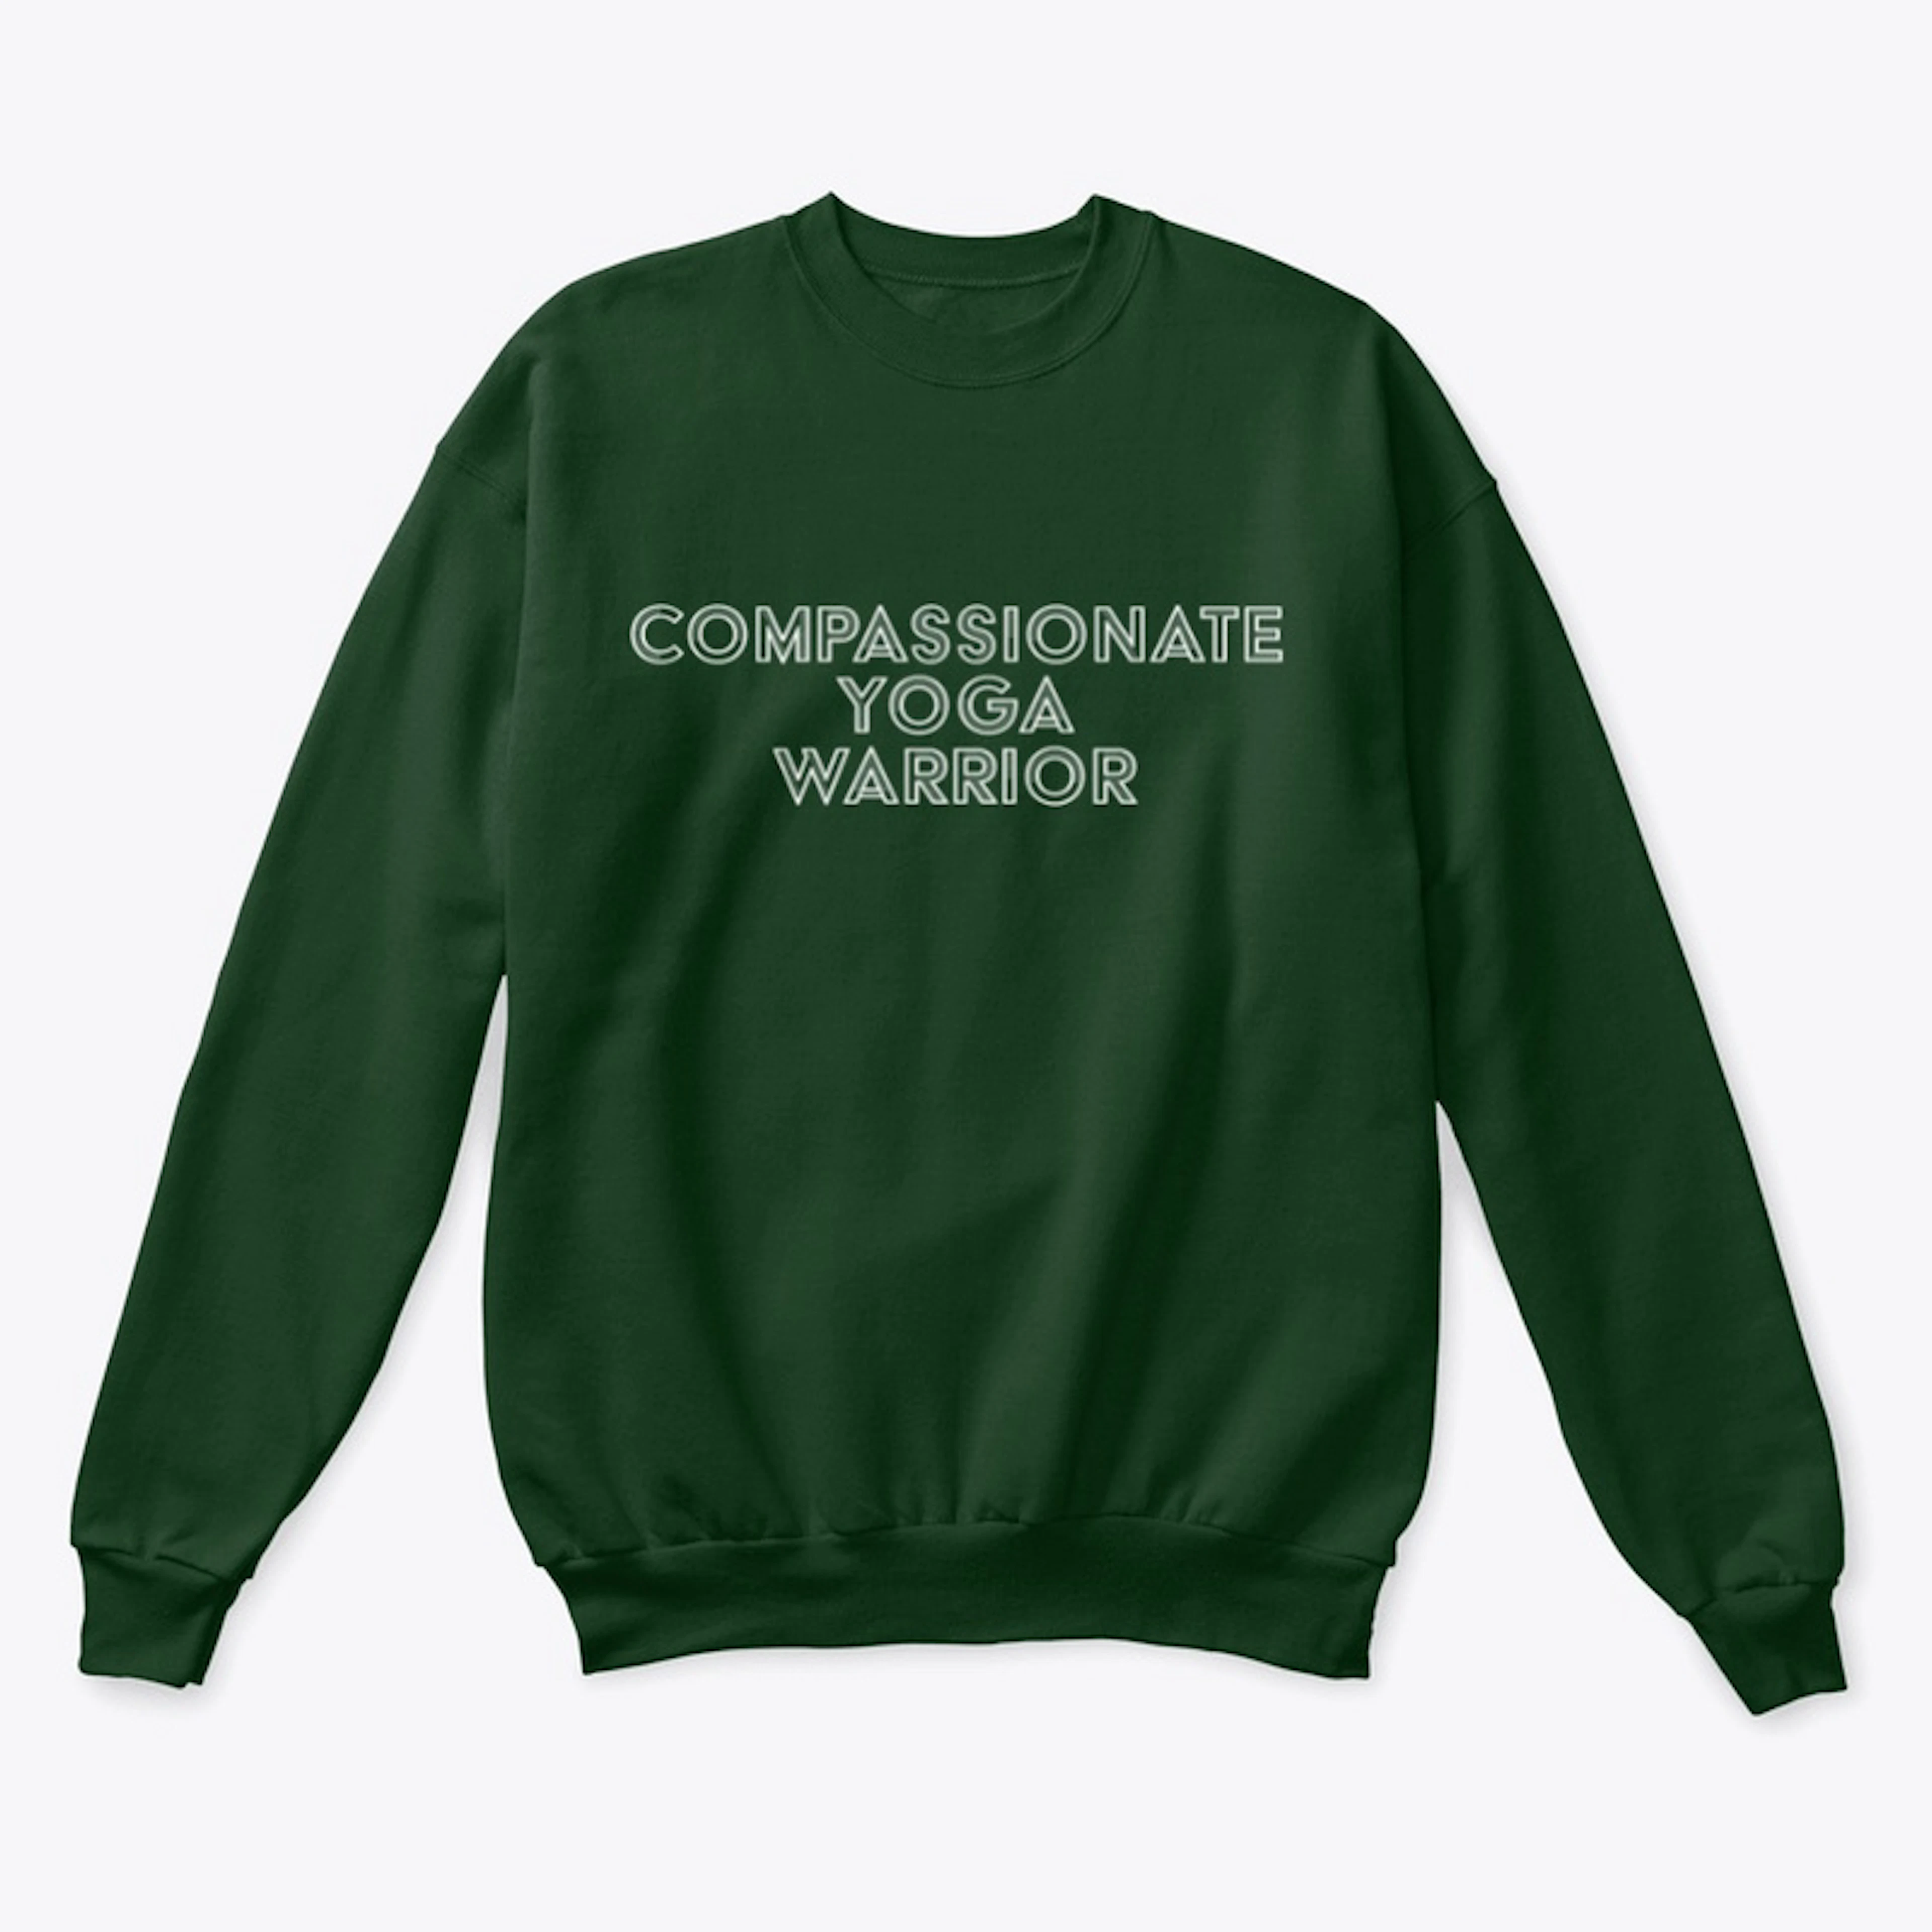 Compassionate Yoga Warrior Sweatshirt